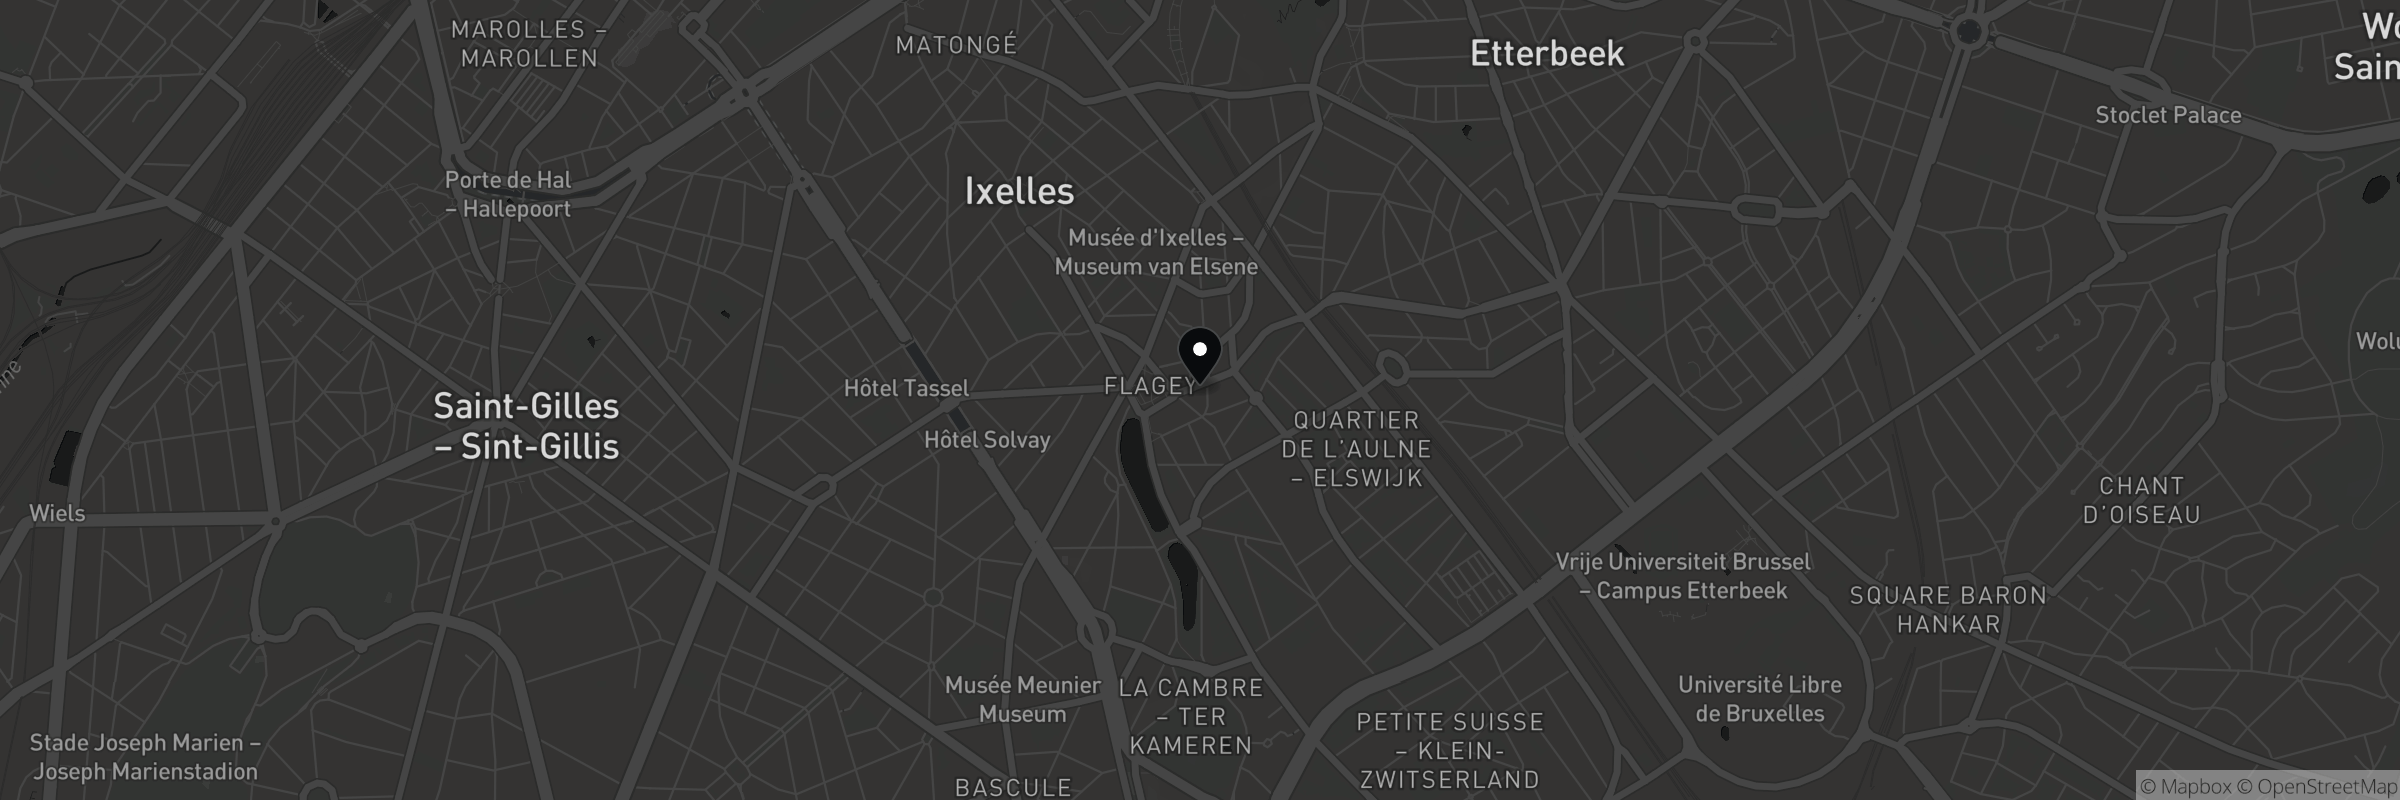 Kaart met het adres van Ixelles